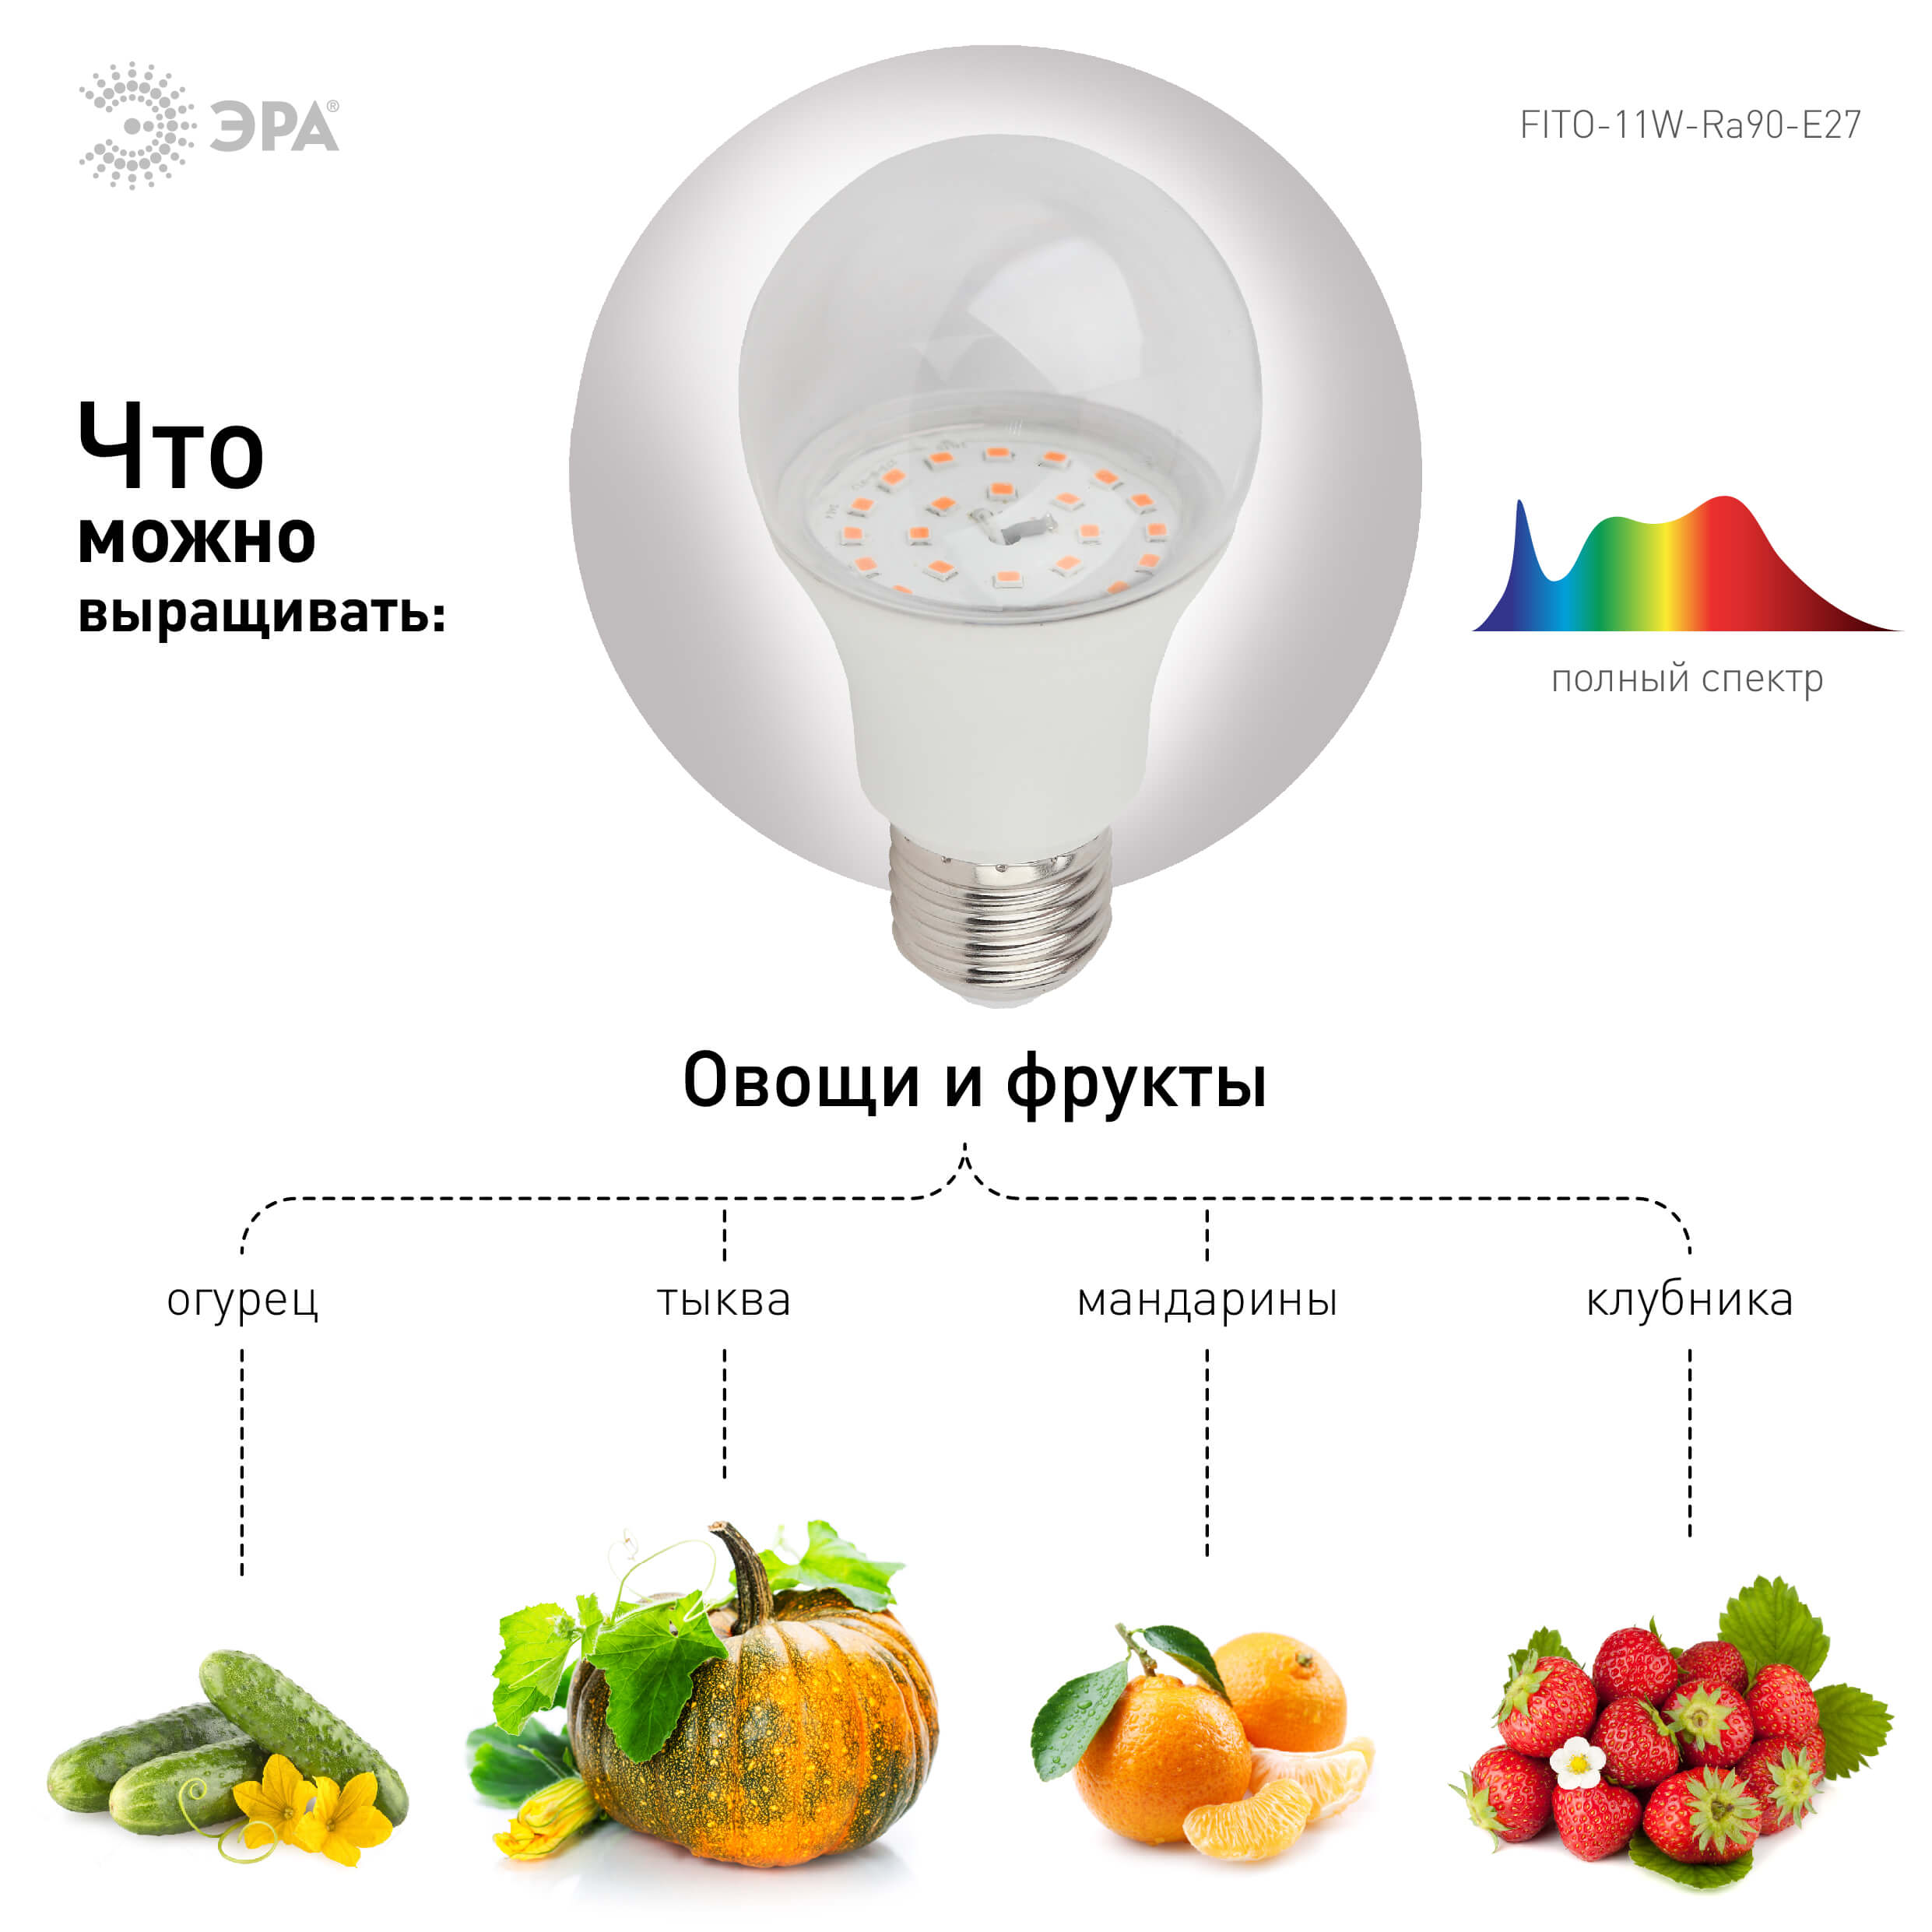 Фитолампа для растений светодиодная ЭРА E27 11W 2150K FITO-11W-Ra90-E27 Б0039172 в Москве